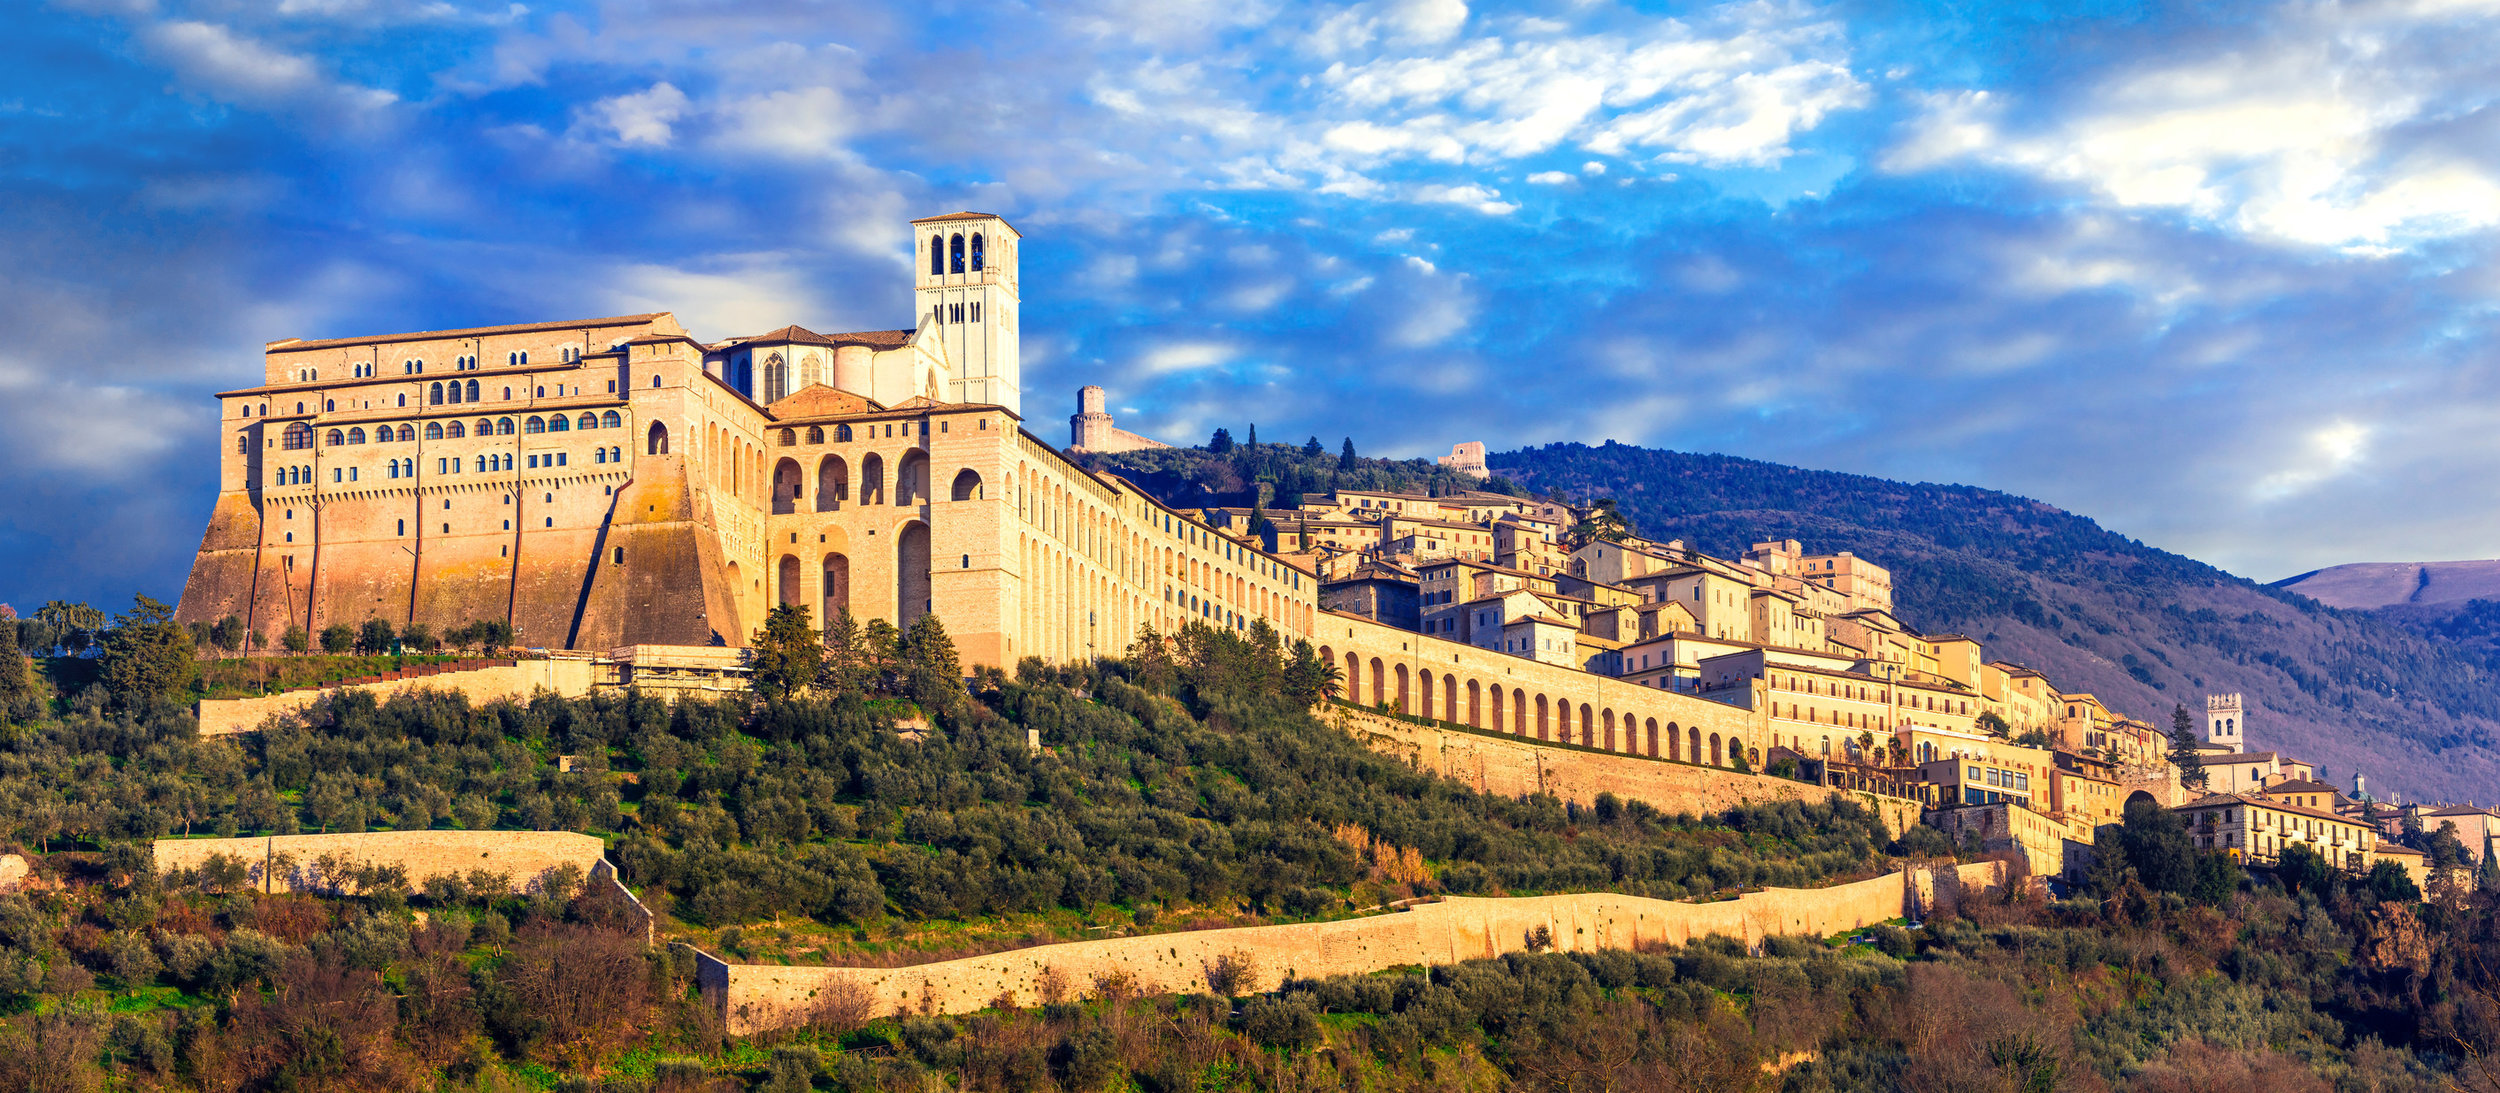 Assisi_1.jpg